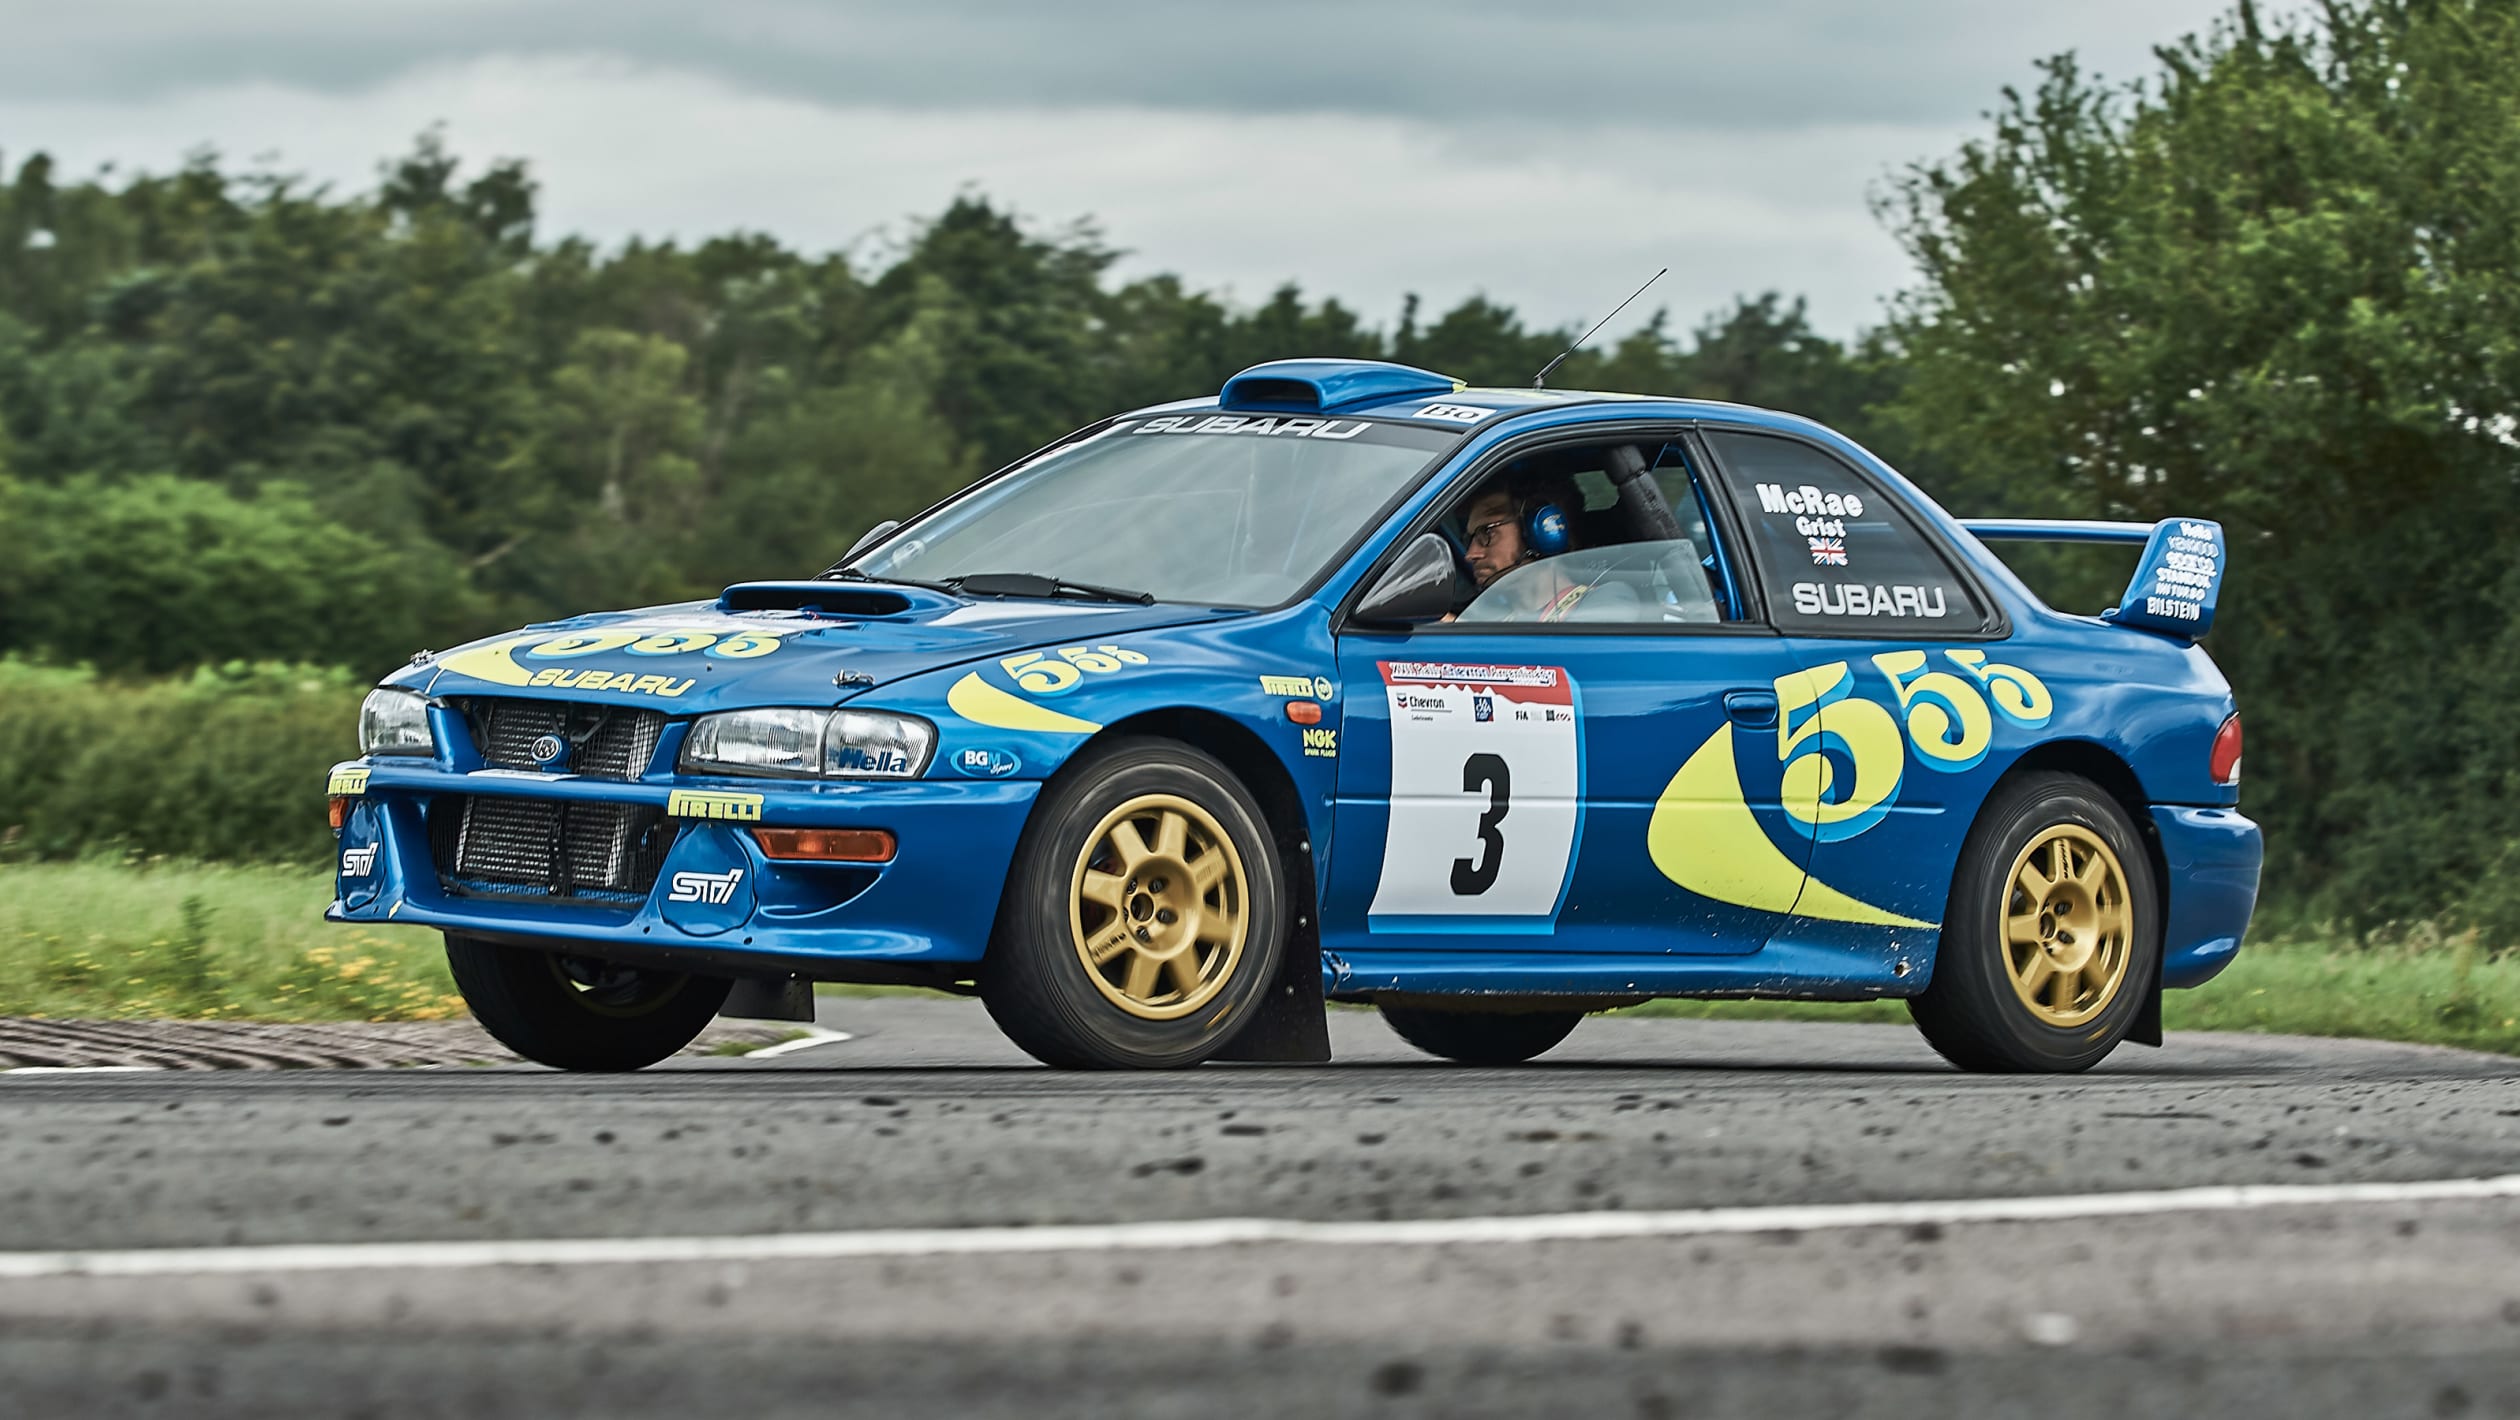 Driving Colin McRae's 1997 Subaru Impreza WRC pictures evo